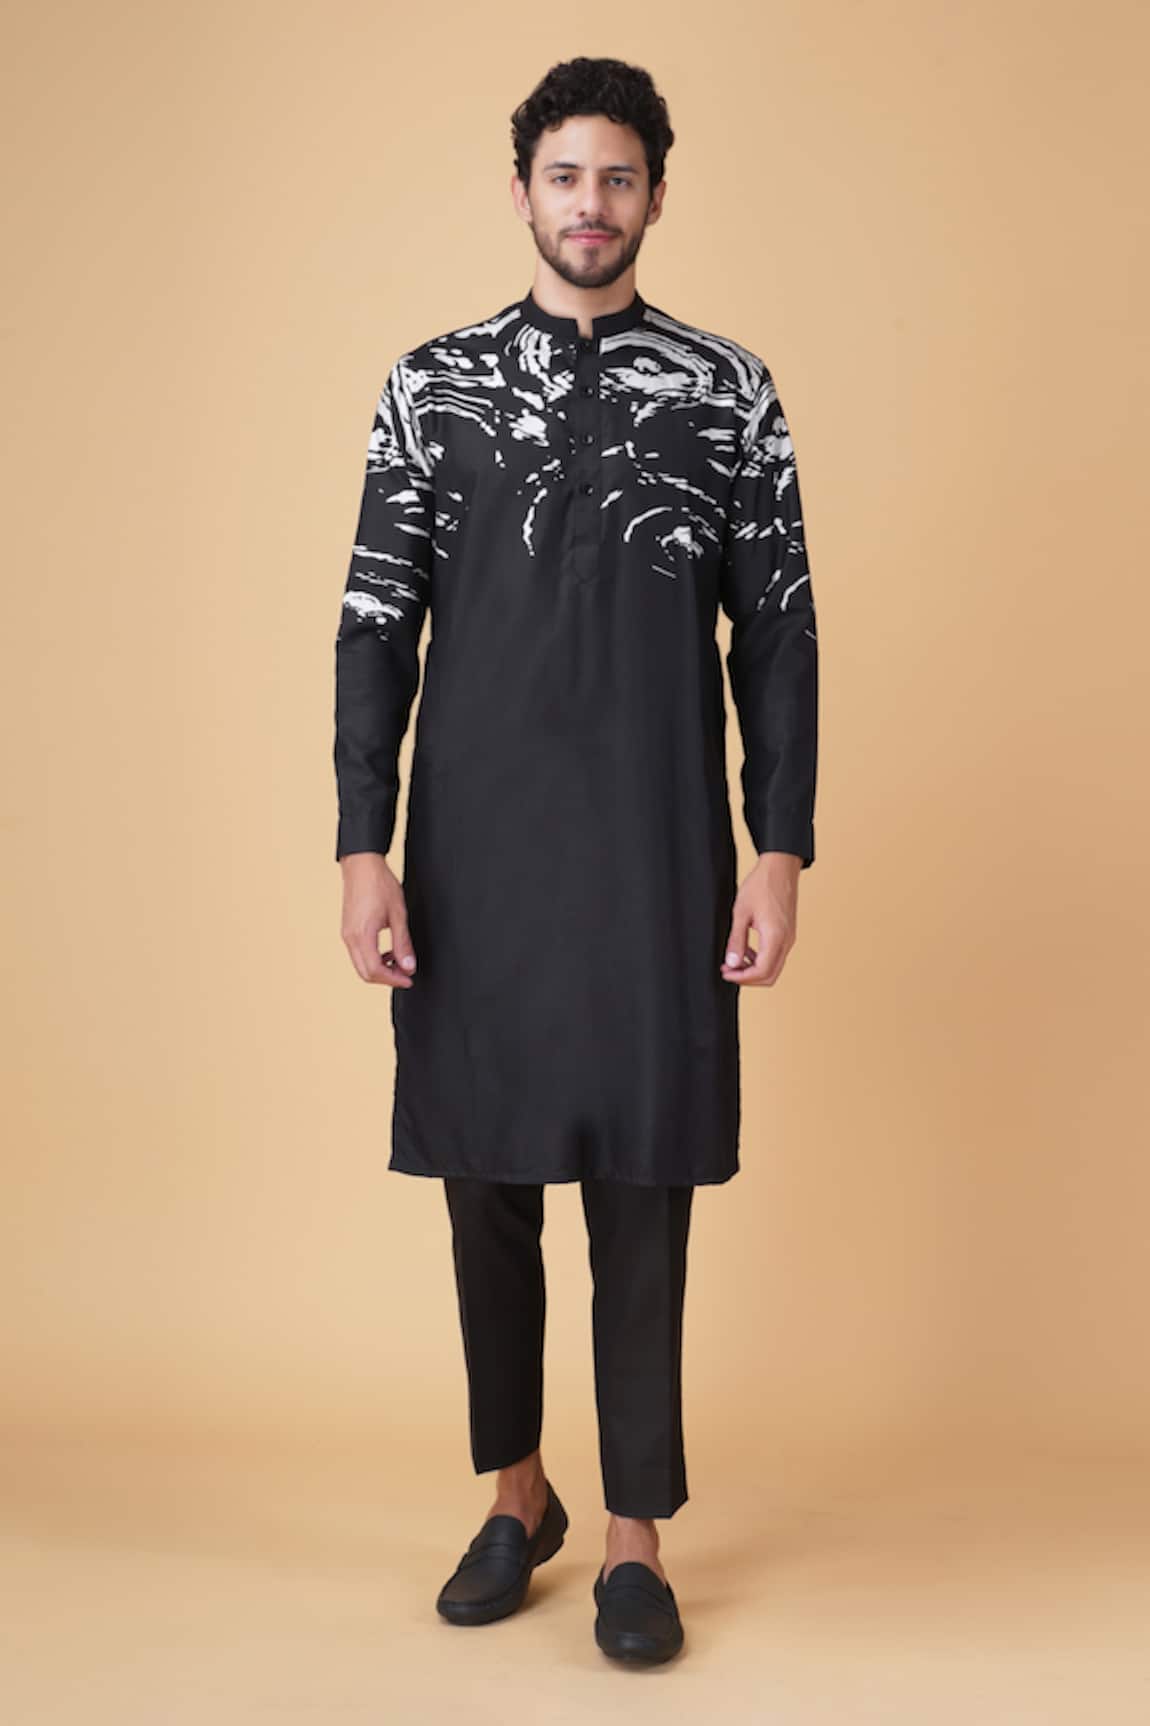 Buy Om Shubh Mangalam Men's Black Kurta Pajama Set with Floral Gray Jacket  Stylish Set at Amazon.in